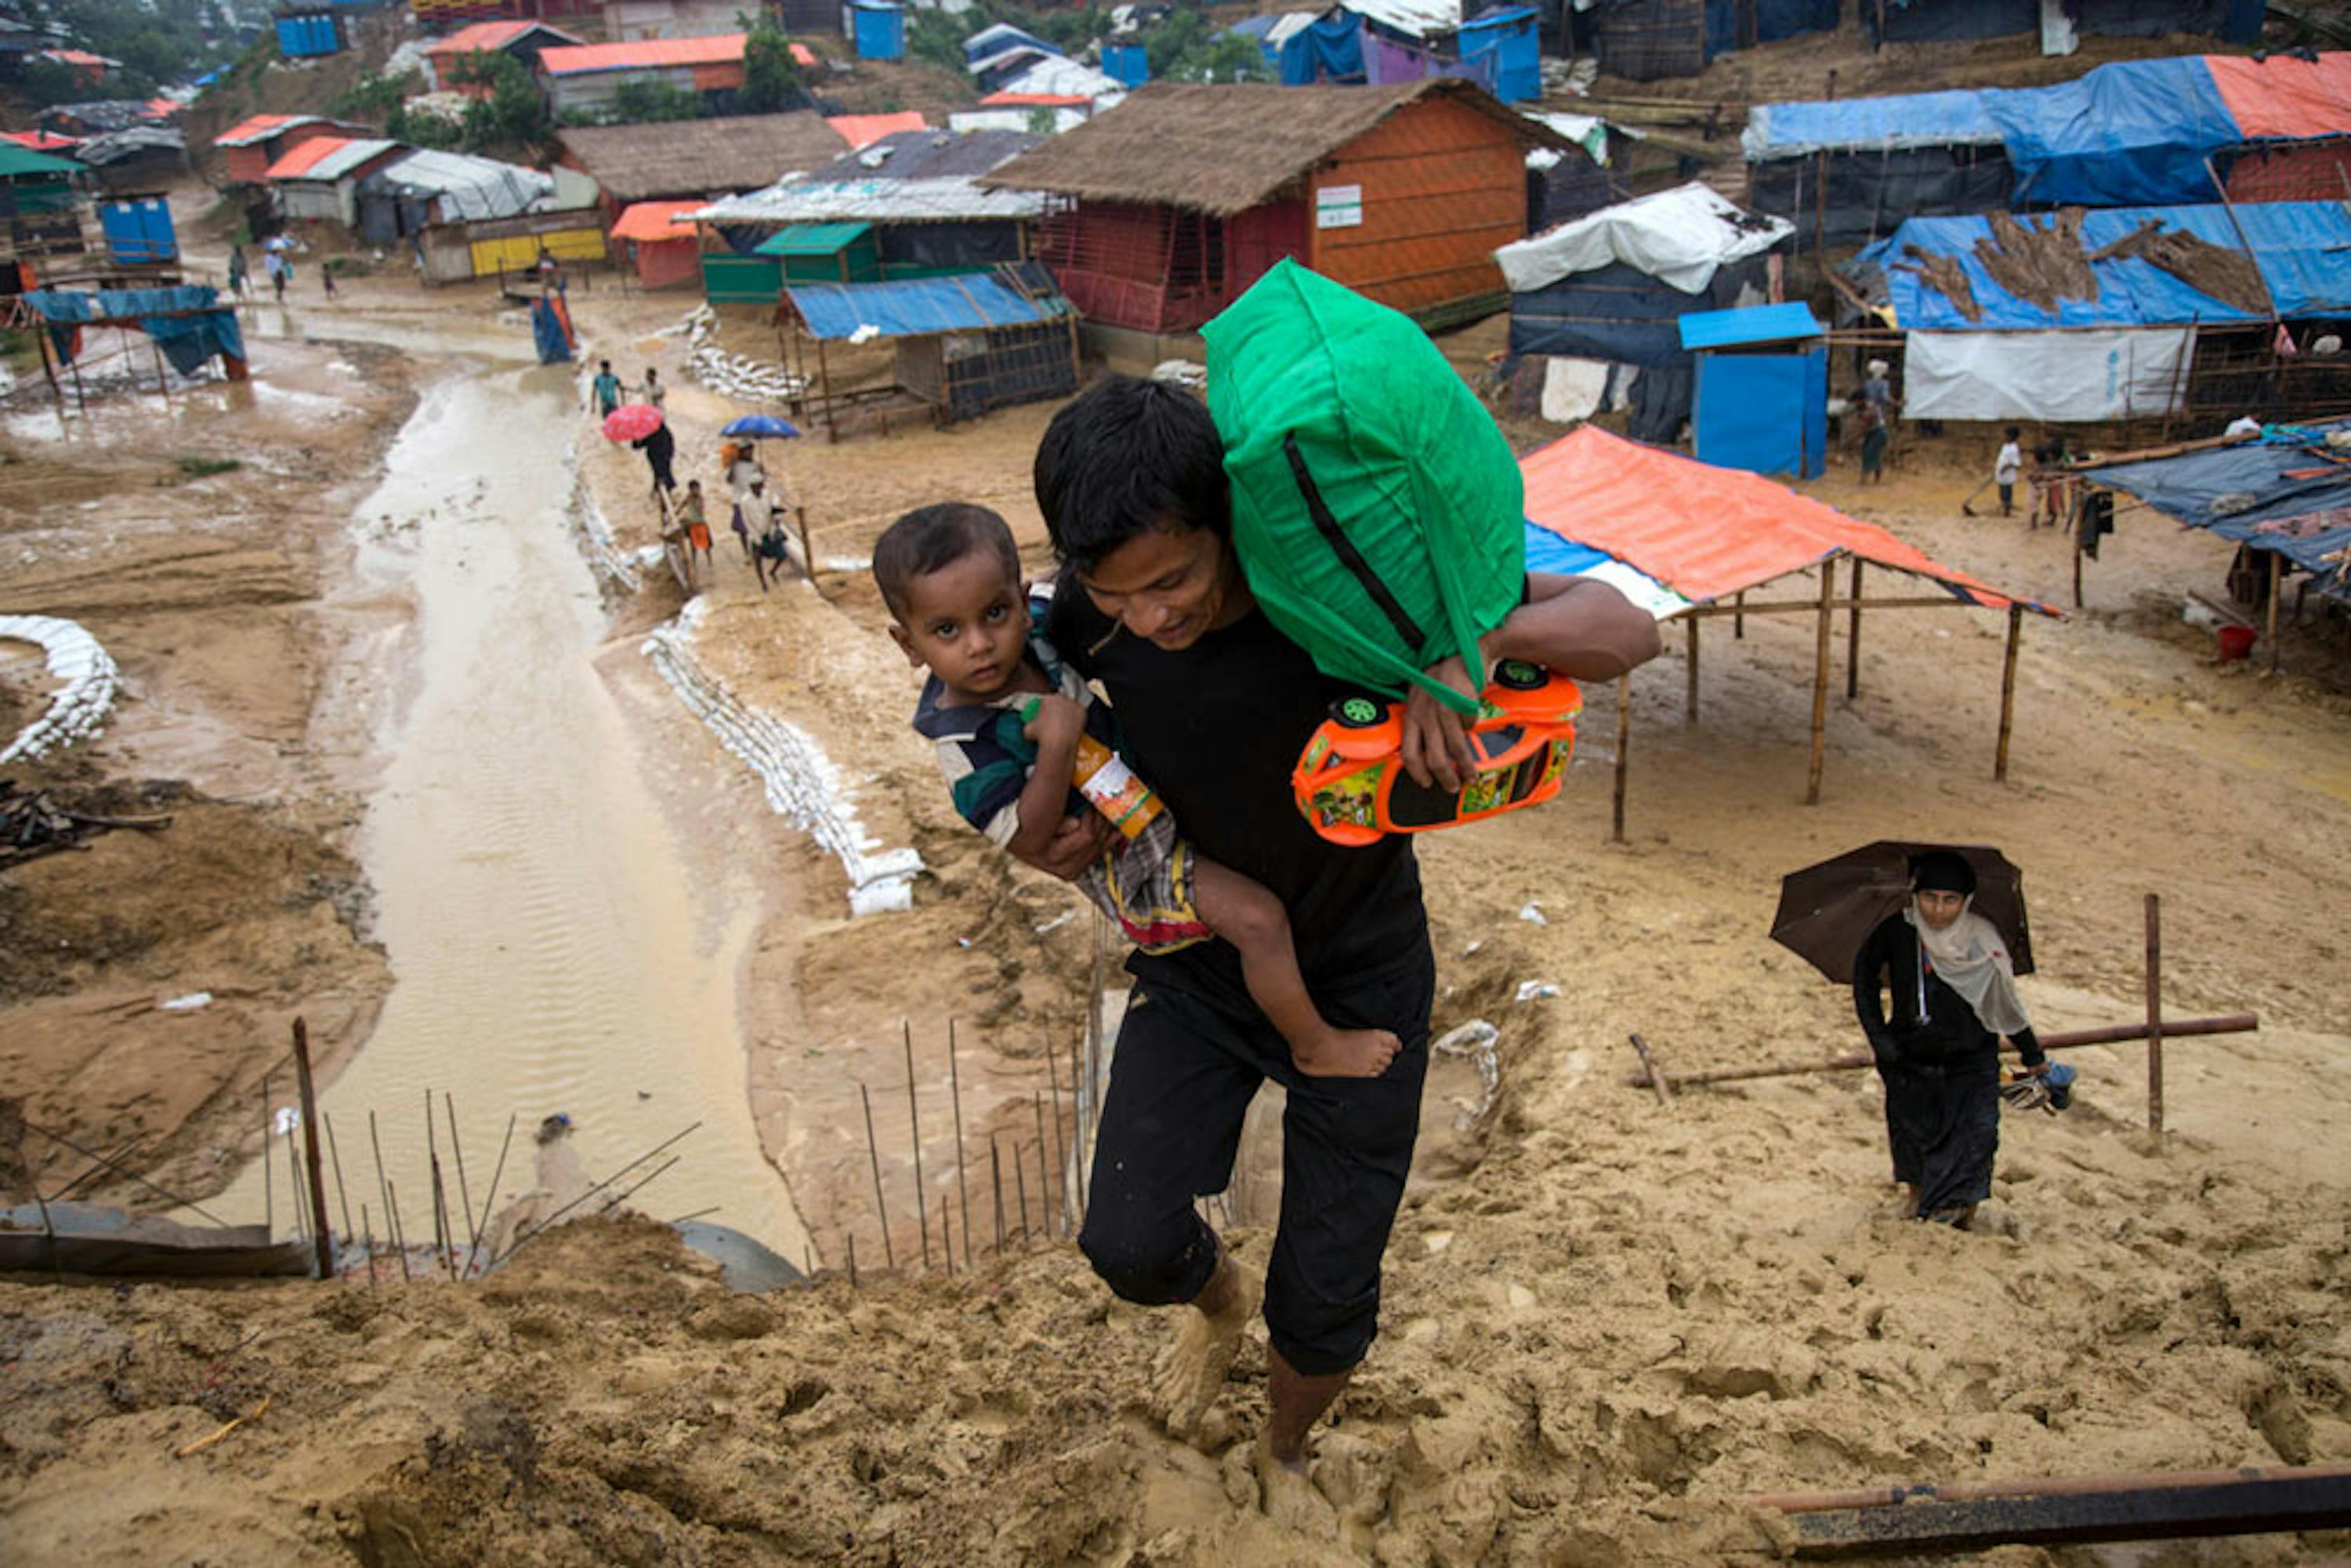 Padre e figlio arrancano nel fango dell'immenso campo profughi di Kutupalong (Bangladesh), il più grande al mondo. Sono circa 900.000 i rifugiati Rohingya attualmente in Bangladesh - ©UNICEF/UN0216991/LeMoyne